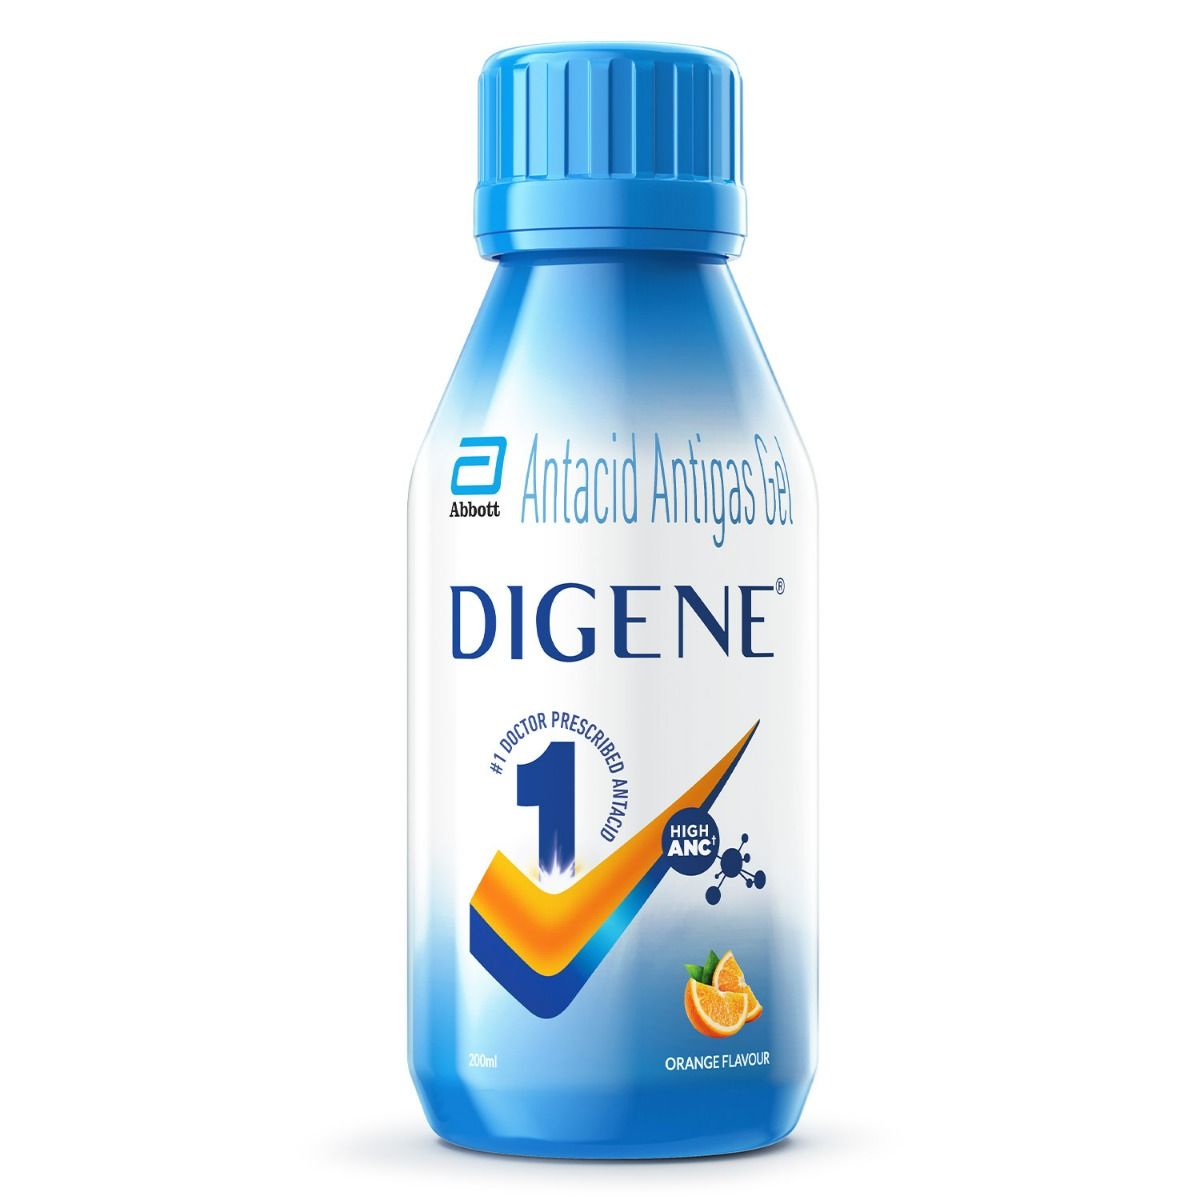 Buy Digene Antacid Antigas Gel Orange Flavour, 200 ml Online